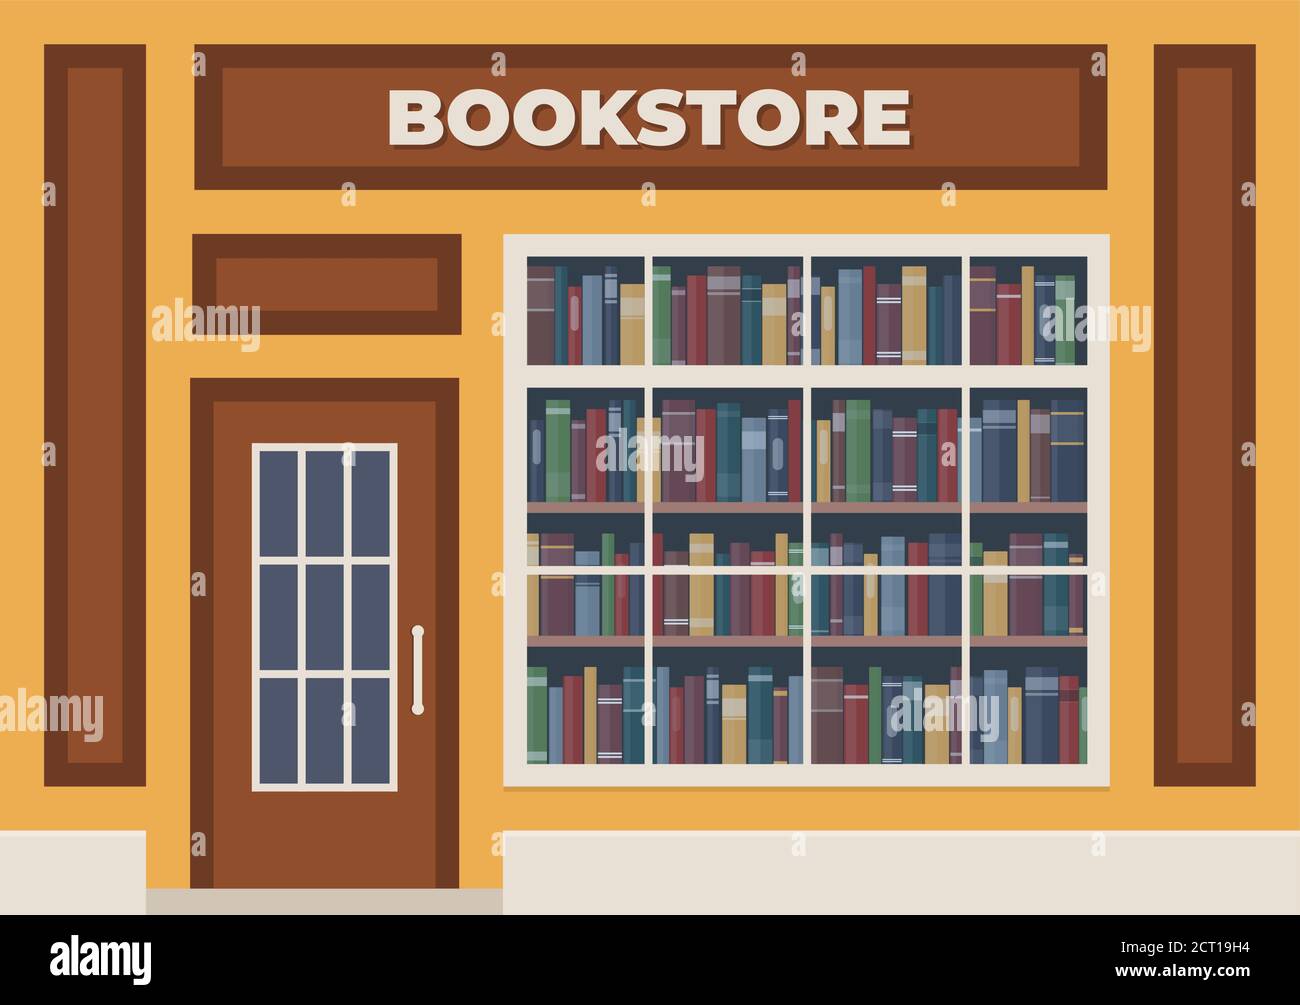 Eine Buchhandlung mit einem Schild über dem Eingang. Bücher im Schaufenster in den Regalen. Straßenladen. Vektorgrafik, flacher Stil Stock Vektor